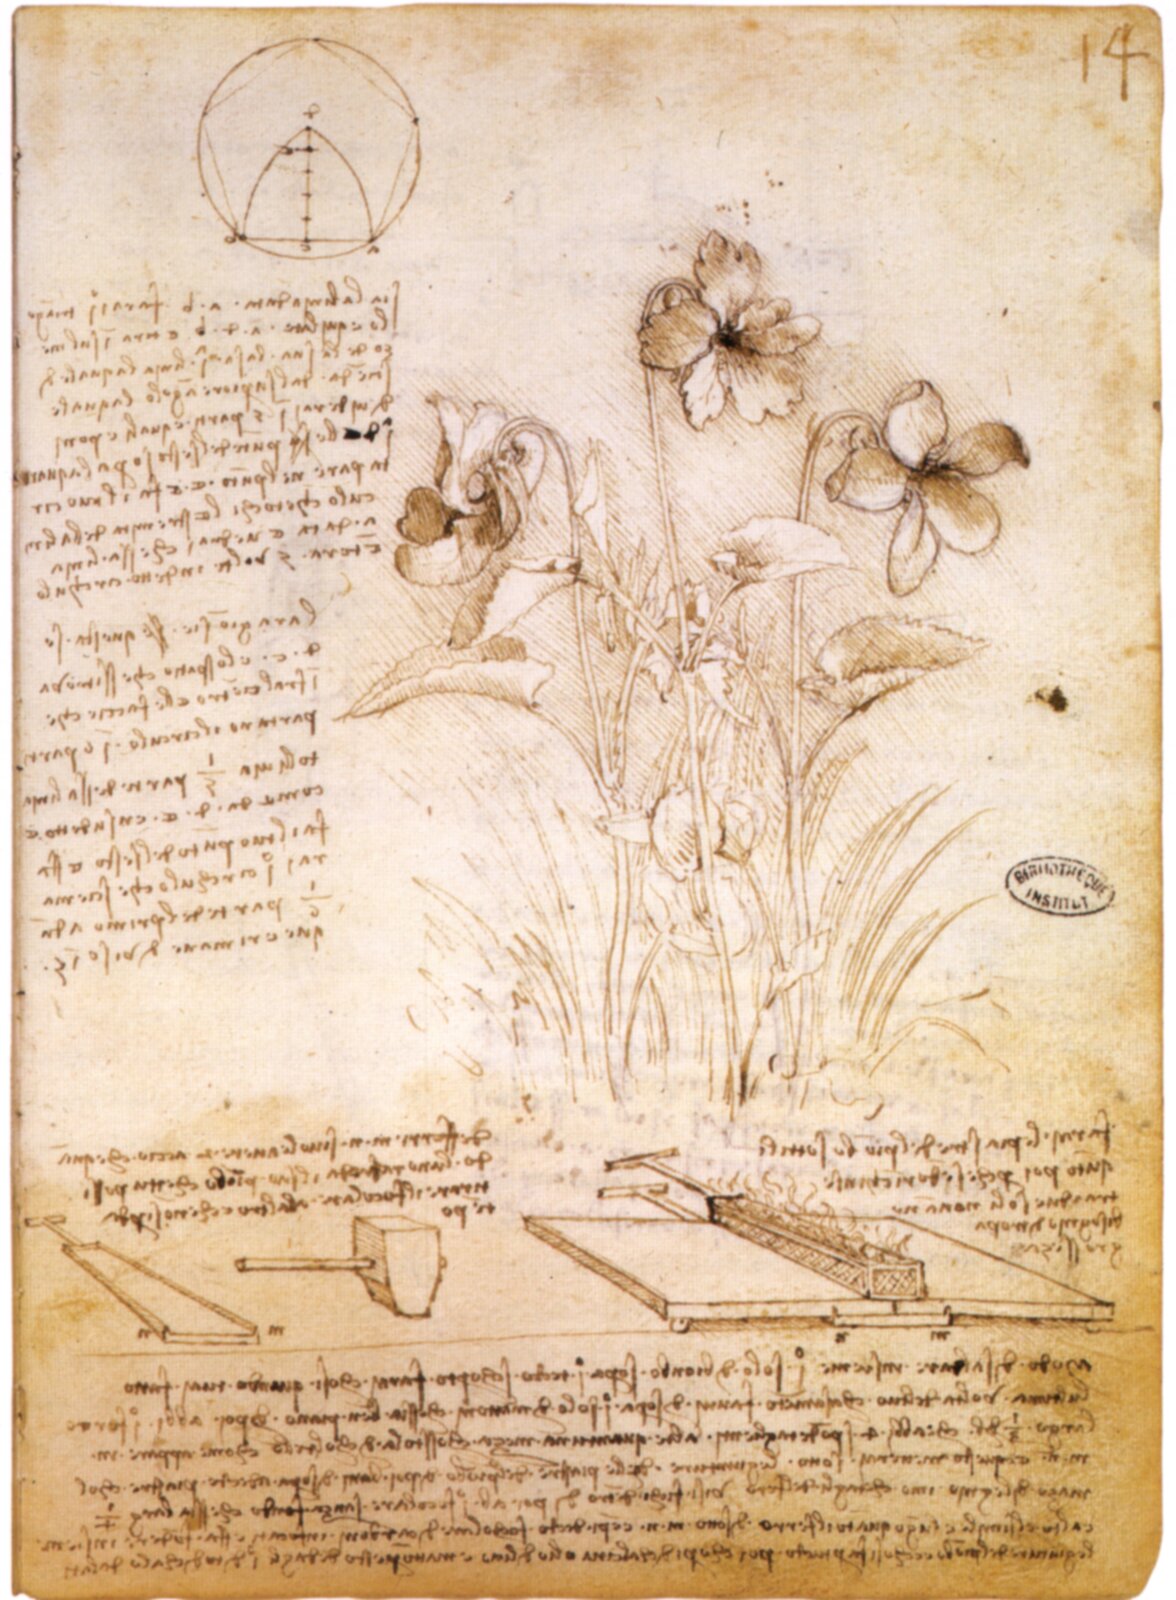 Notatki z botaniki Rękopis Leonarda da Vinci z notatkami z botaniki. Obecnie przechowywany w Bibliotece w Paryżu. Zwróć uwagę na notatki sporządzone słynnym pismem lustrzanym – litery miały normalny wygląd dopiero gdy oglądało się je odbite w lustrze. Źródło: Leonardo da Vinci, Notatki z botaniki, ok. 1490, Biblioteka w Paryżu, domena publiczna.